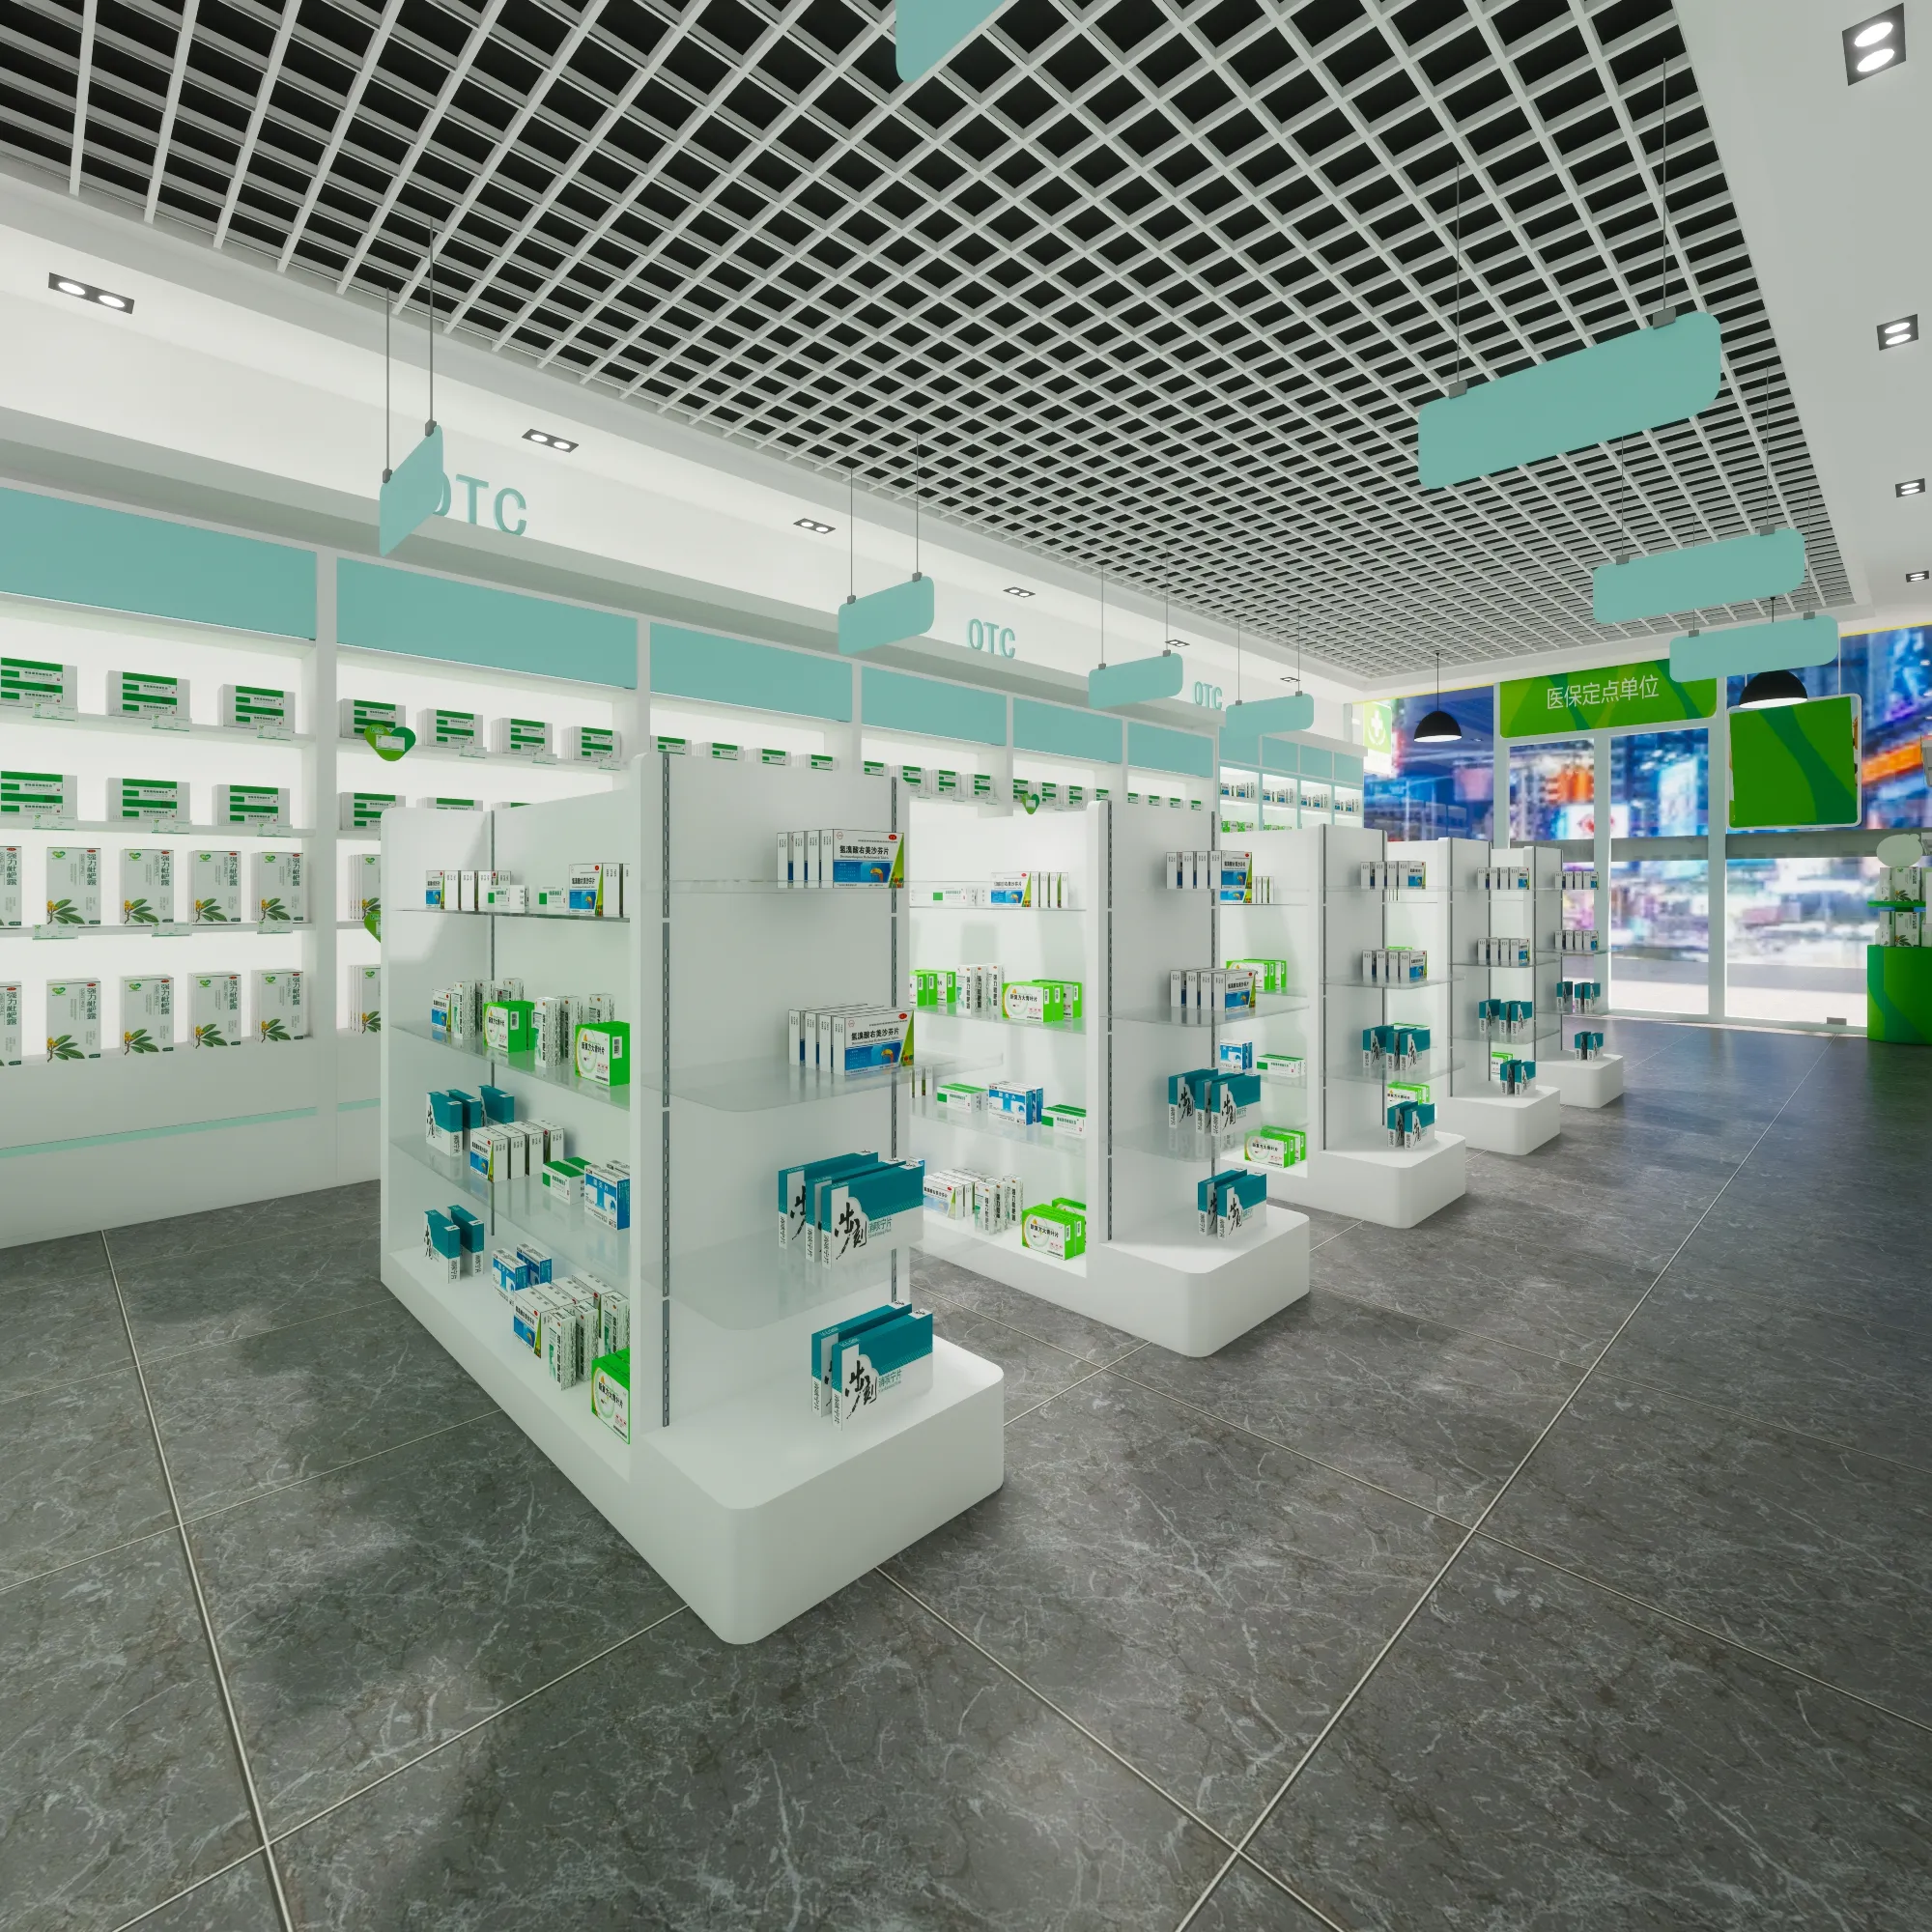 Venta al por menor Farmacia Tienda Exhibición Muebles Mostrador de exhibición de vidrio Tienda personalizada Estante de exhibición Accesorio Tienda Escaparate